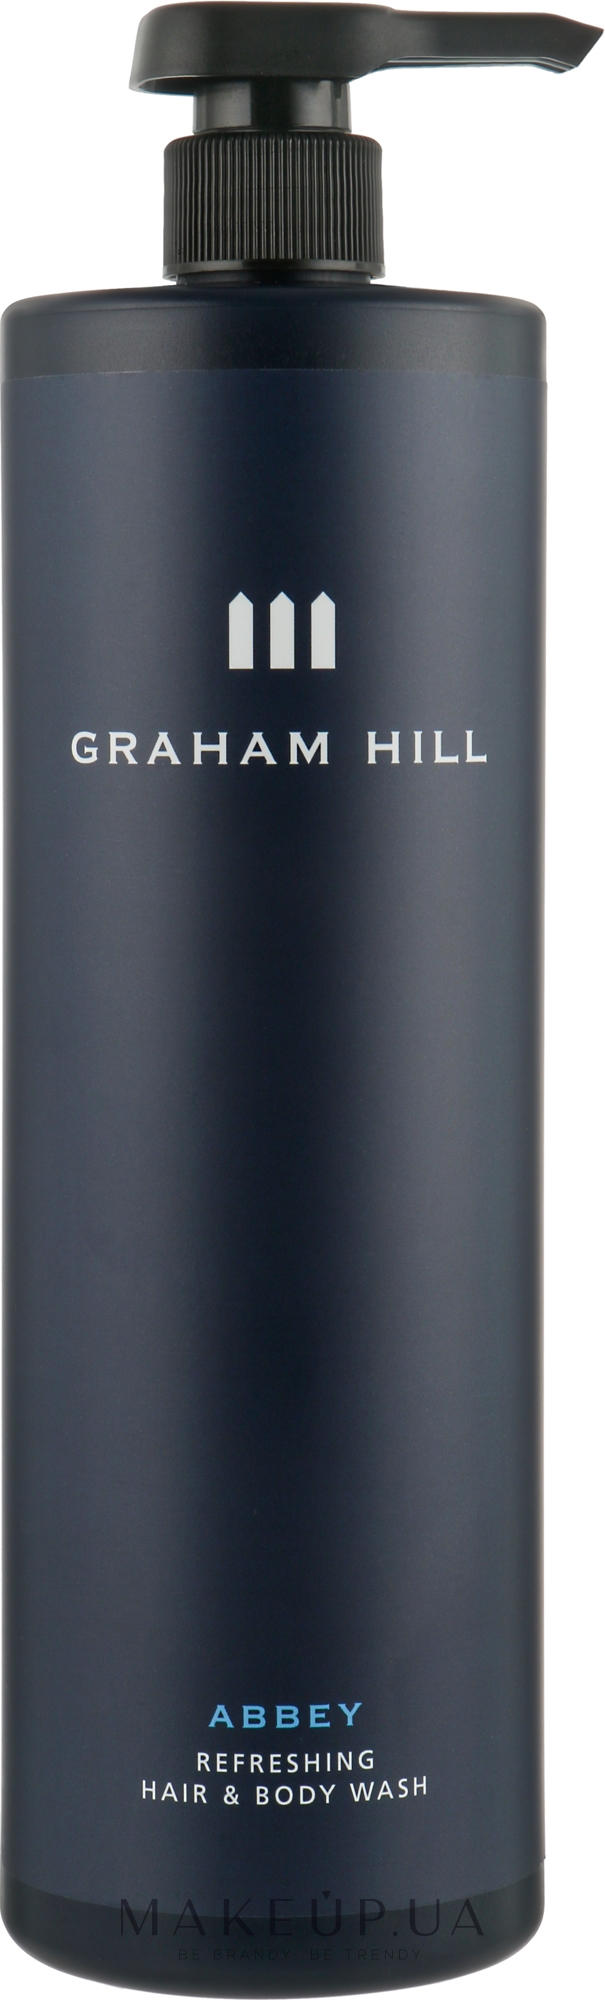 Гель для душа 2 в 1 - Graham Hill Abbey Refreshing Hair And Body Wash  — фото 1000ml